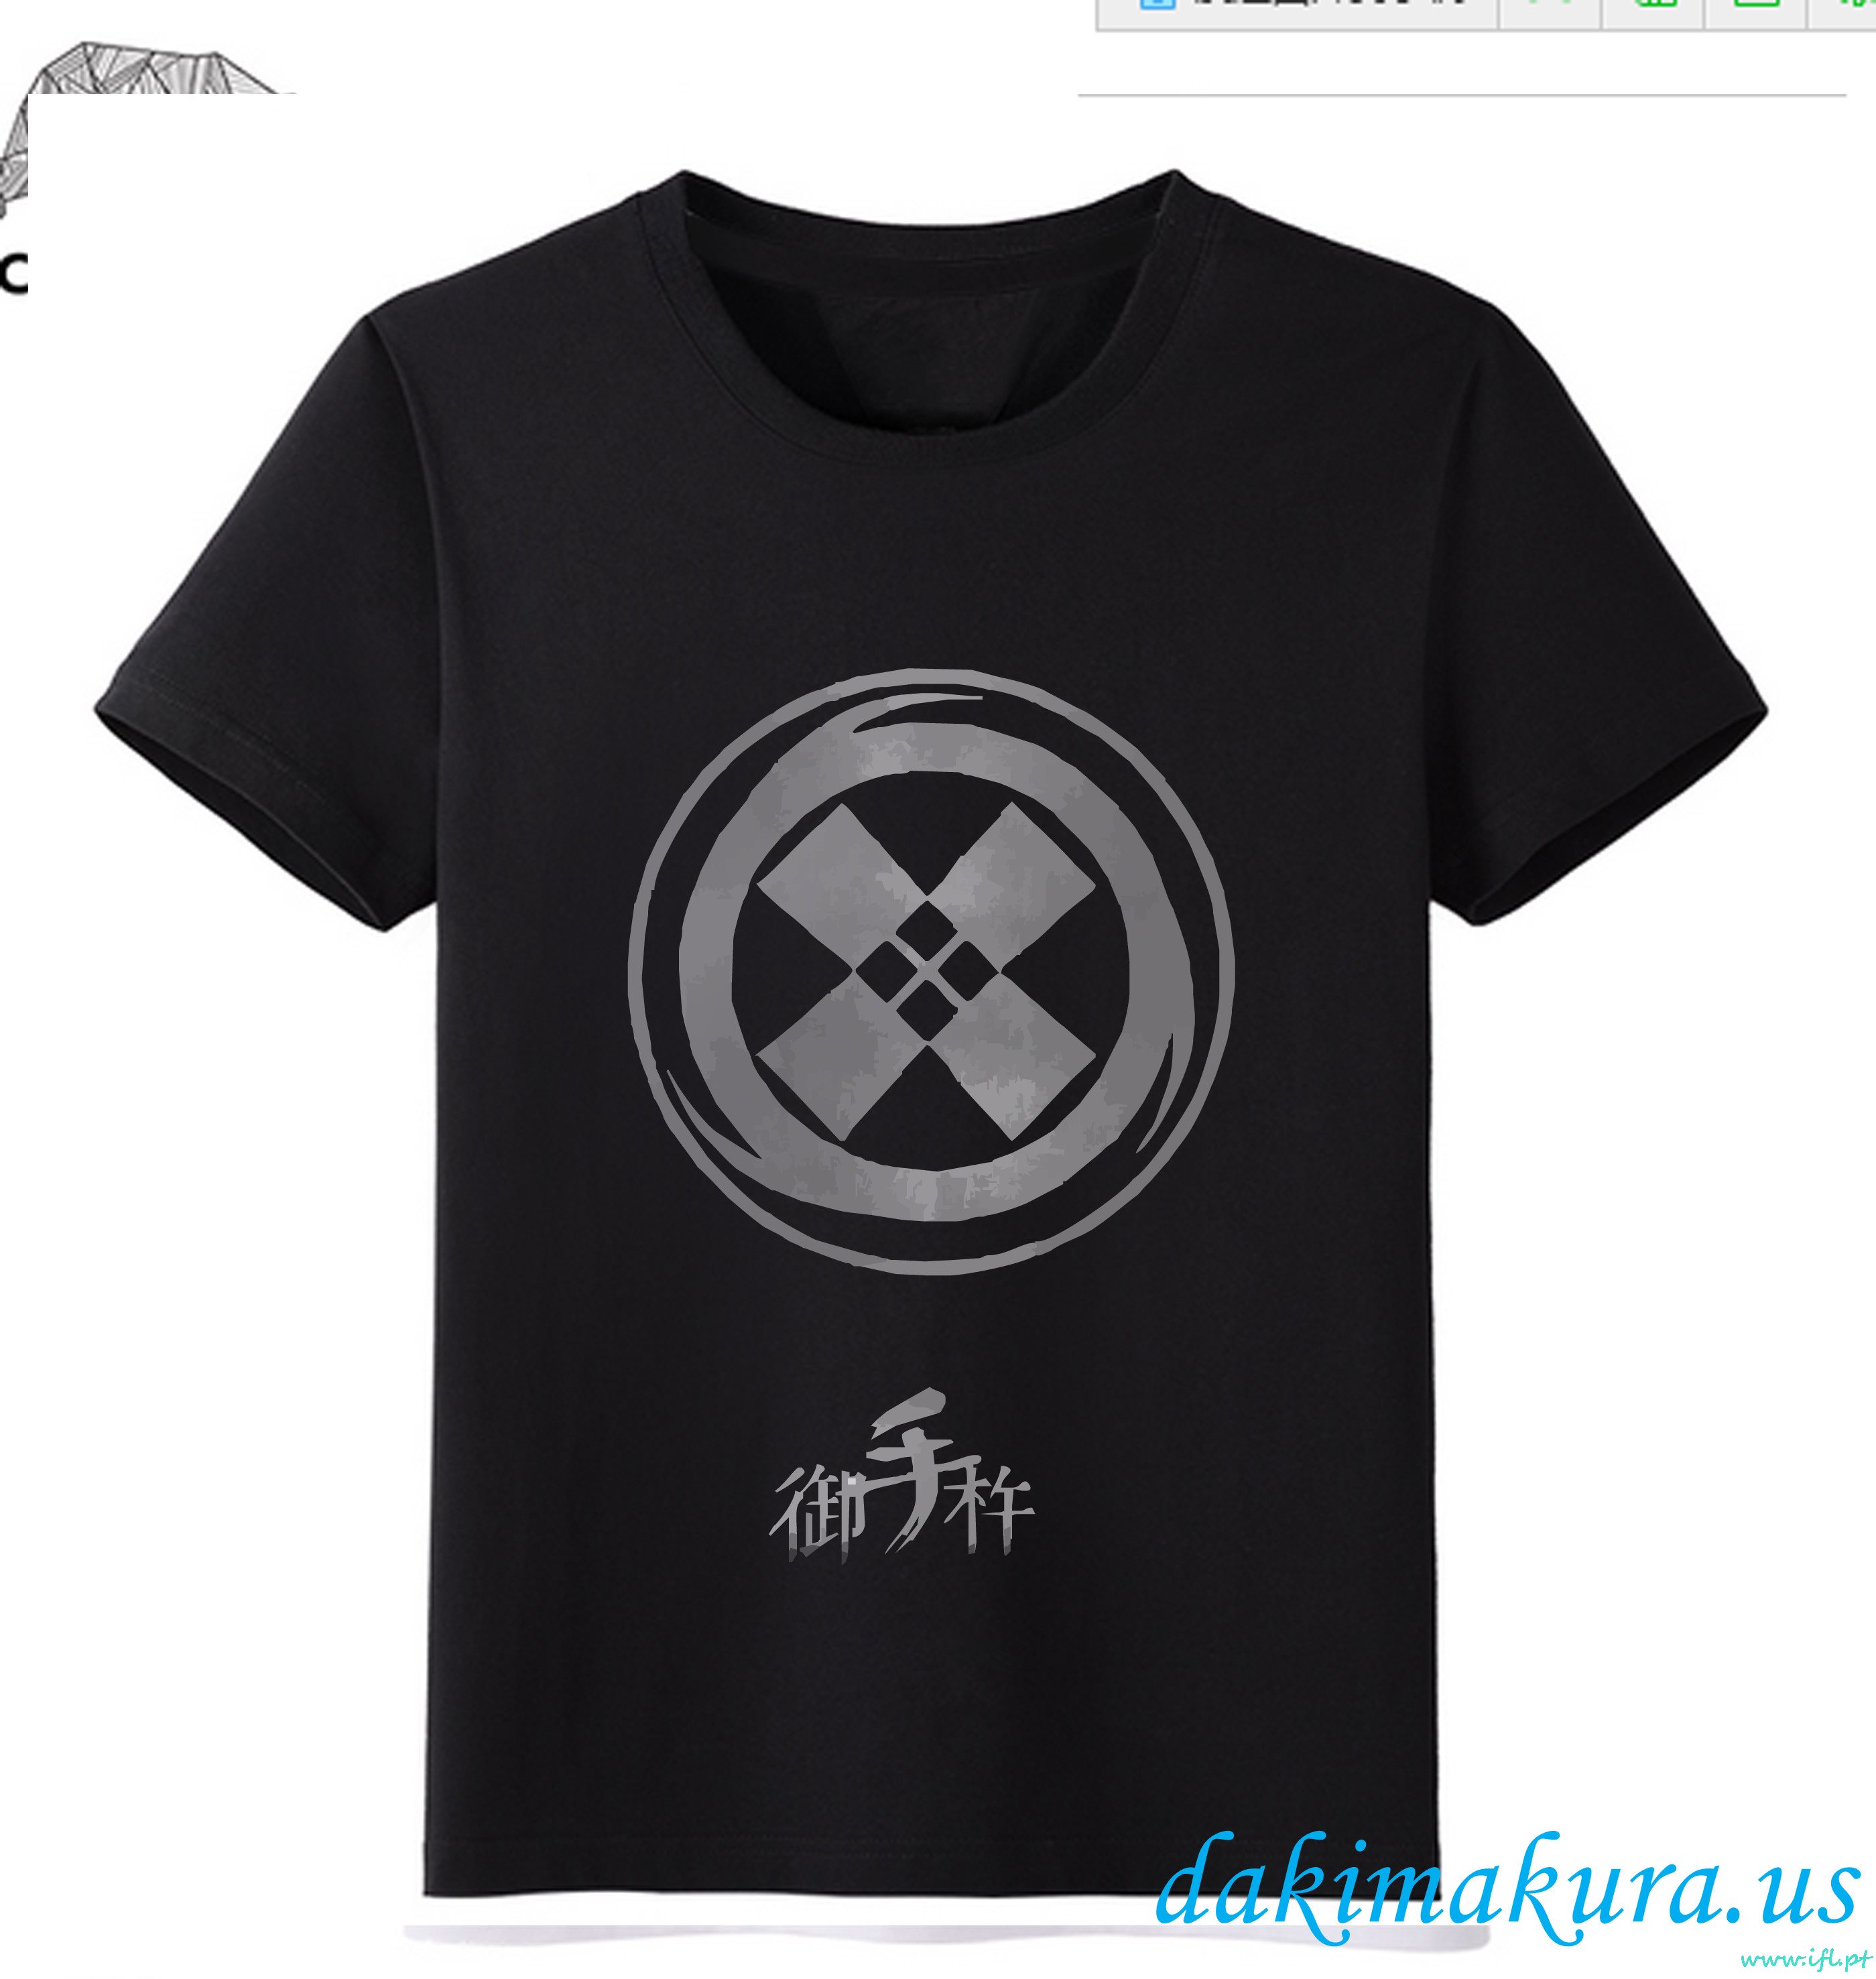 Halpa Musta - Touken Ranbu Online Miehet Anime Muoti T-paitoja China Tehdas